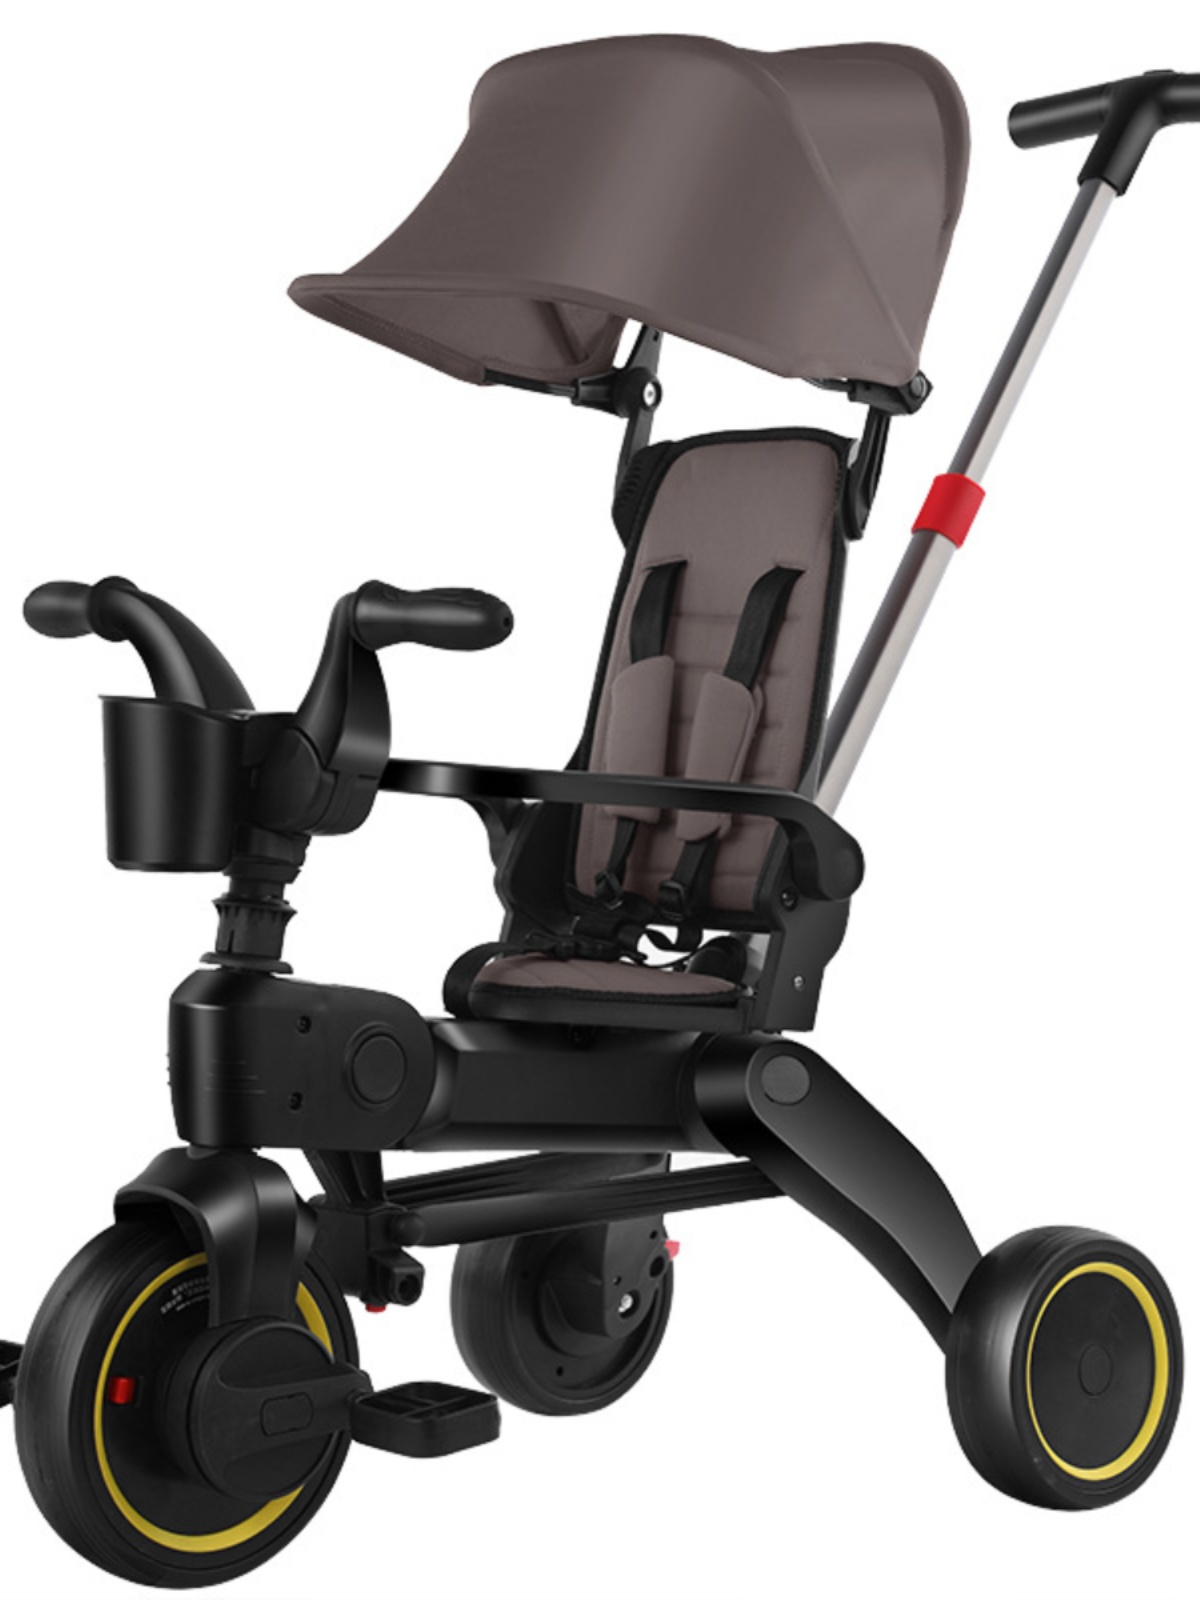 新新款儿童三轮车 15岁可折叠溜娃婴儿手推车 轻便宝宝脚踏车品